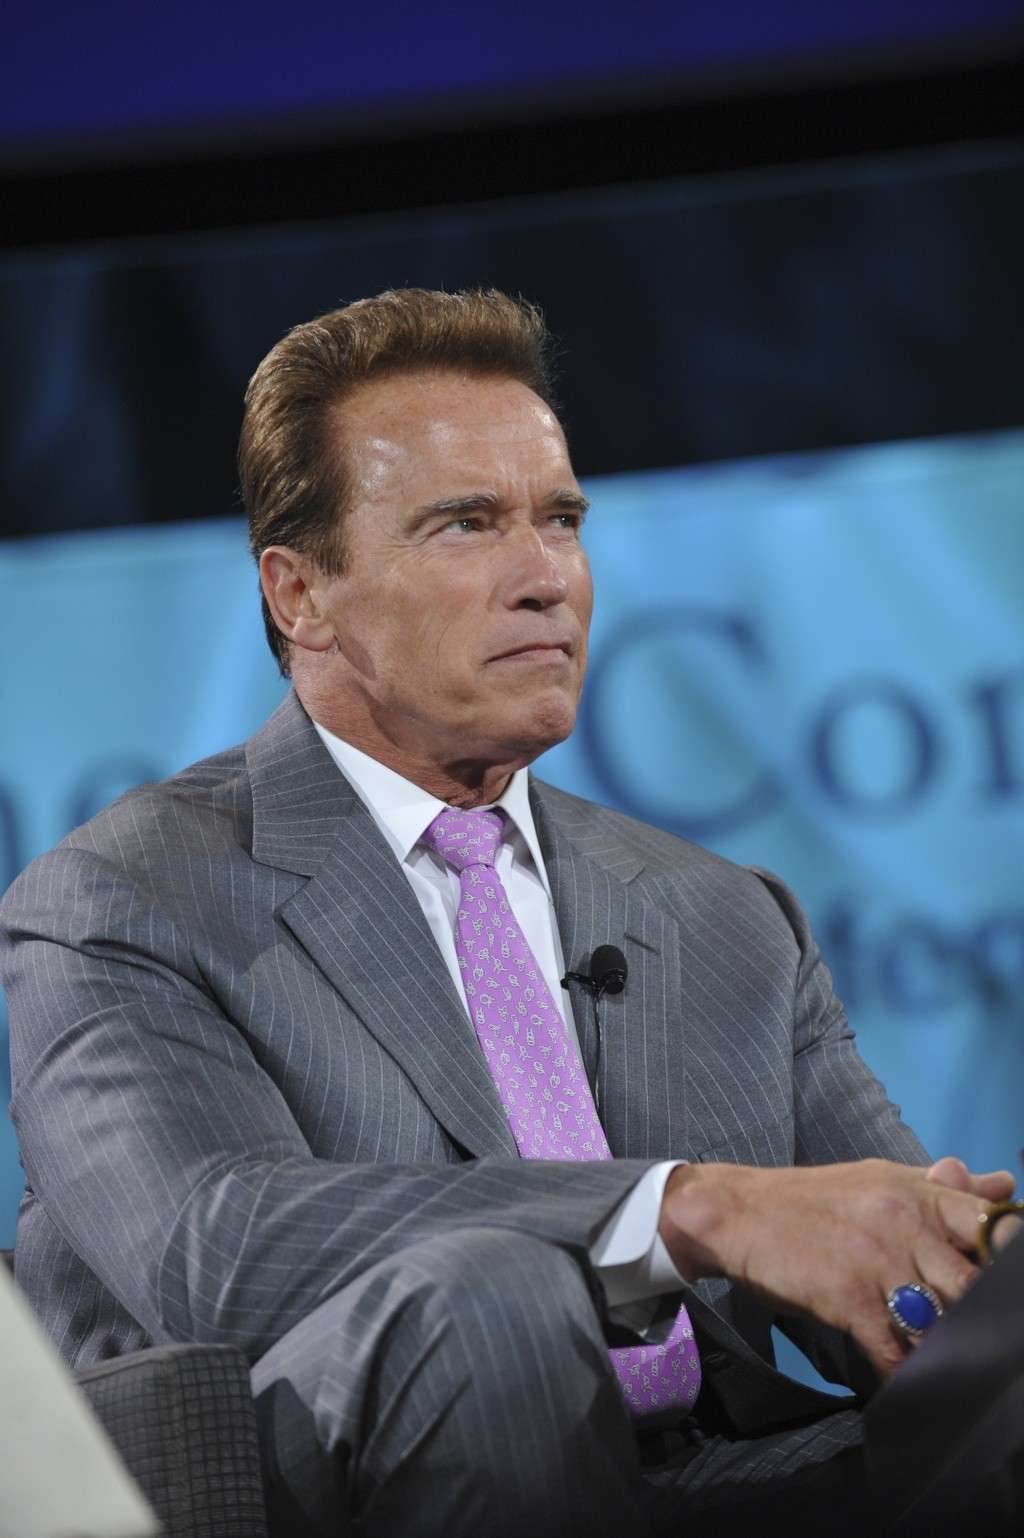 Arnold Schwarzenegger en photos - Page 5 Arnold23